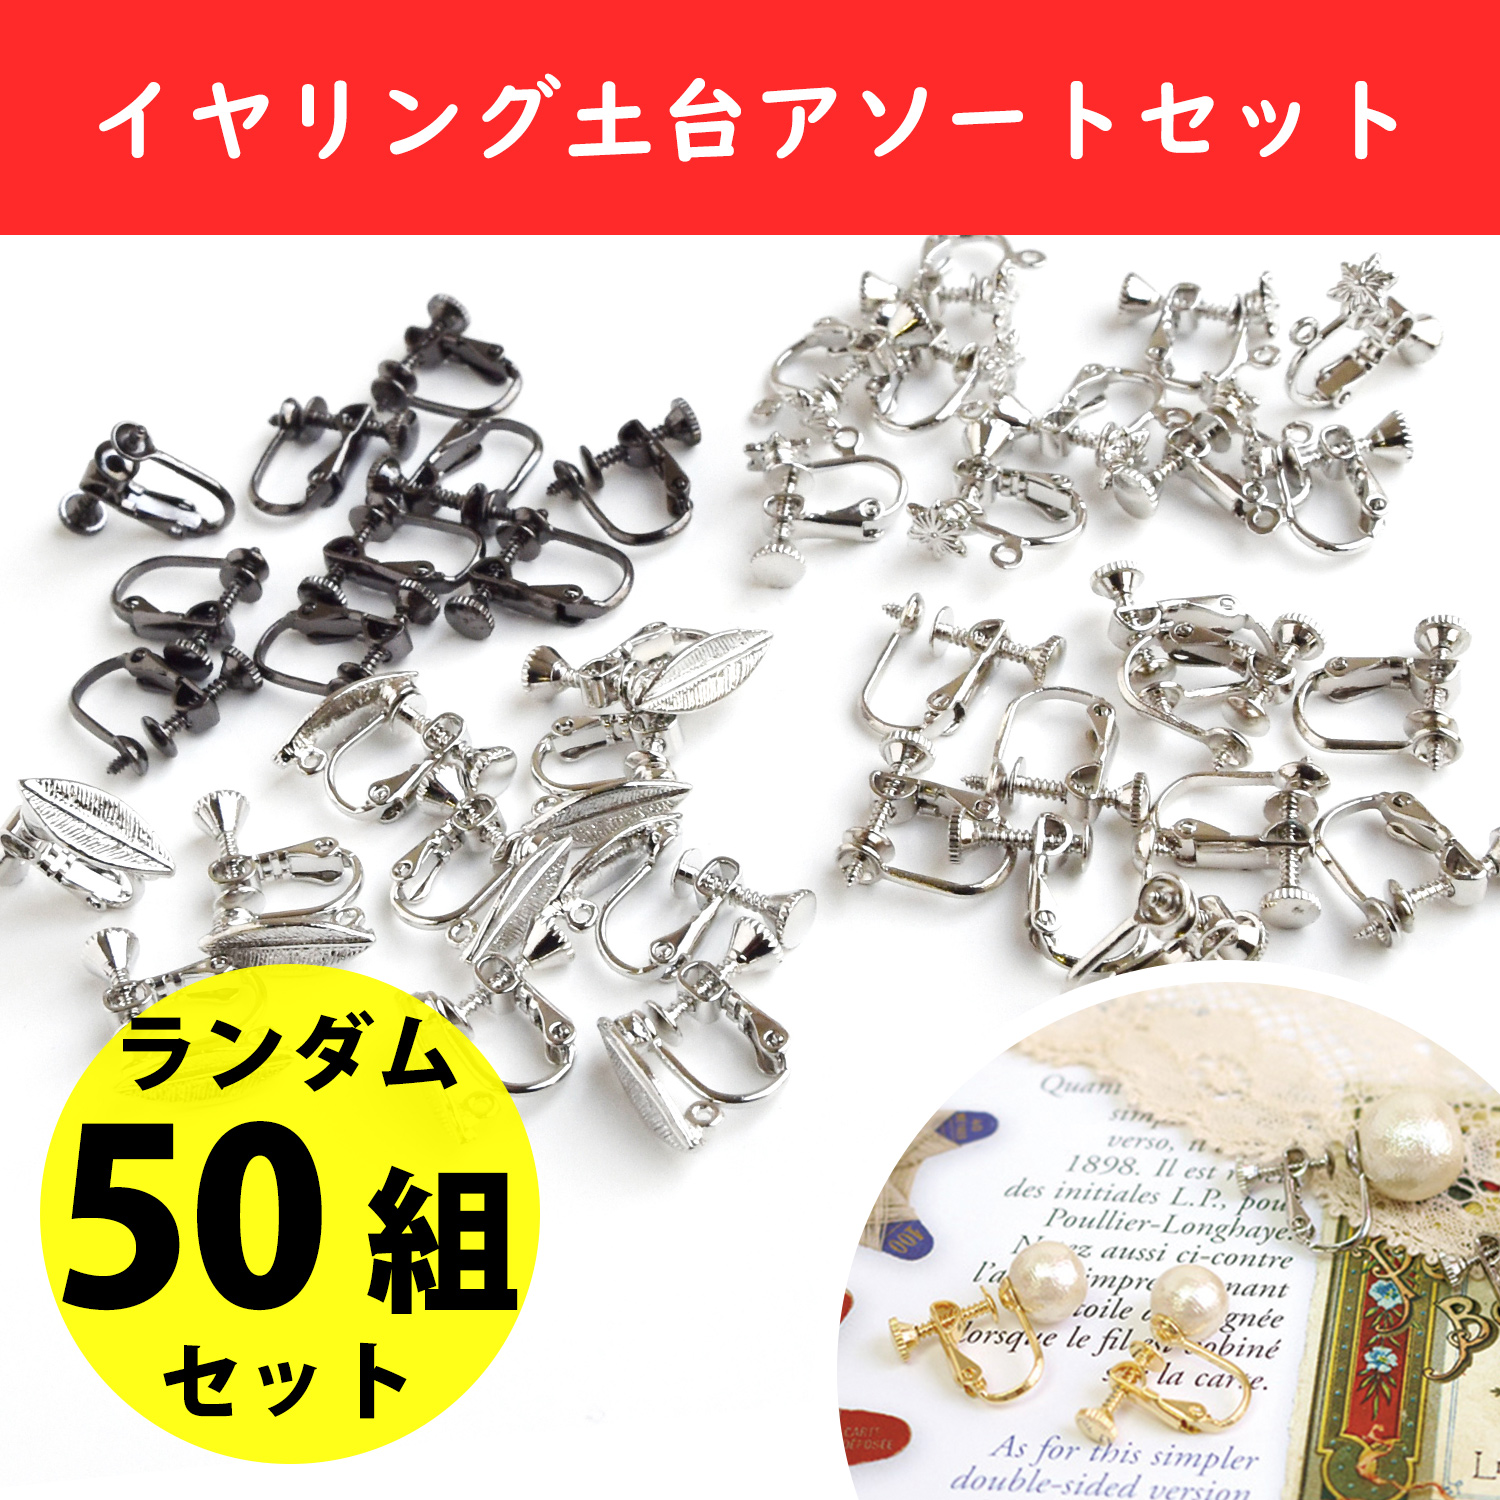 ER-ASSORT earring assortment set", approximately 50 random pairs (bag)